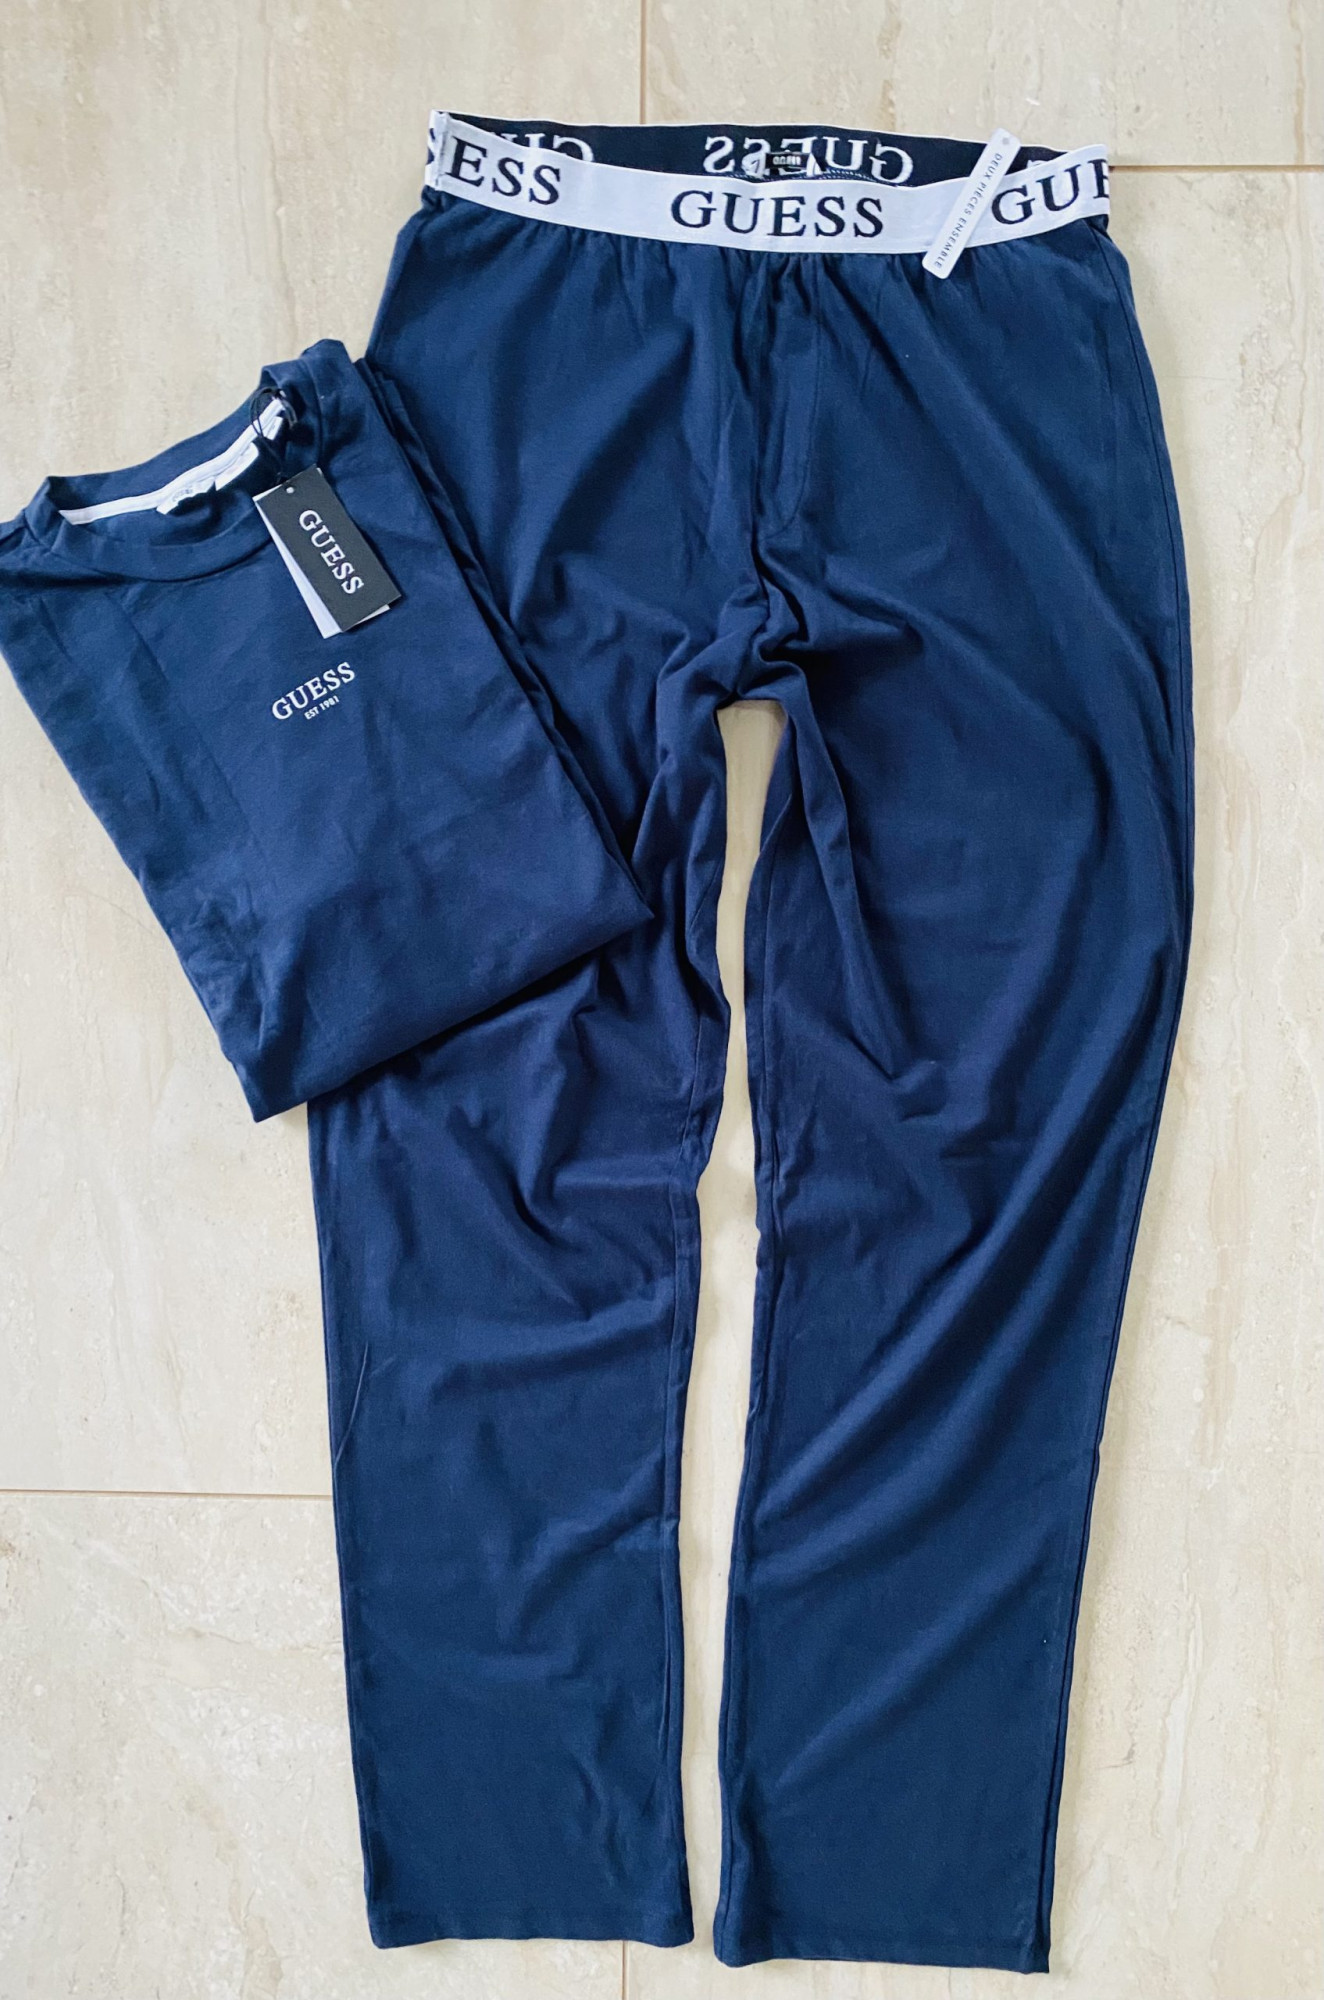 Pánské pyžamo Tmavě modrá model 16299551 - Guess Velikost: M, Barvy: Modrá